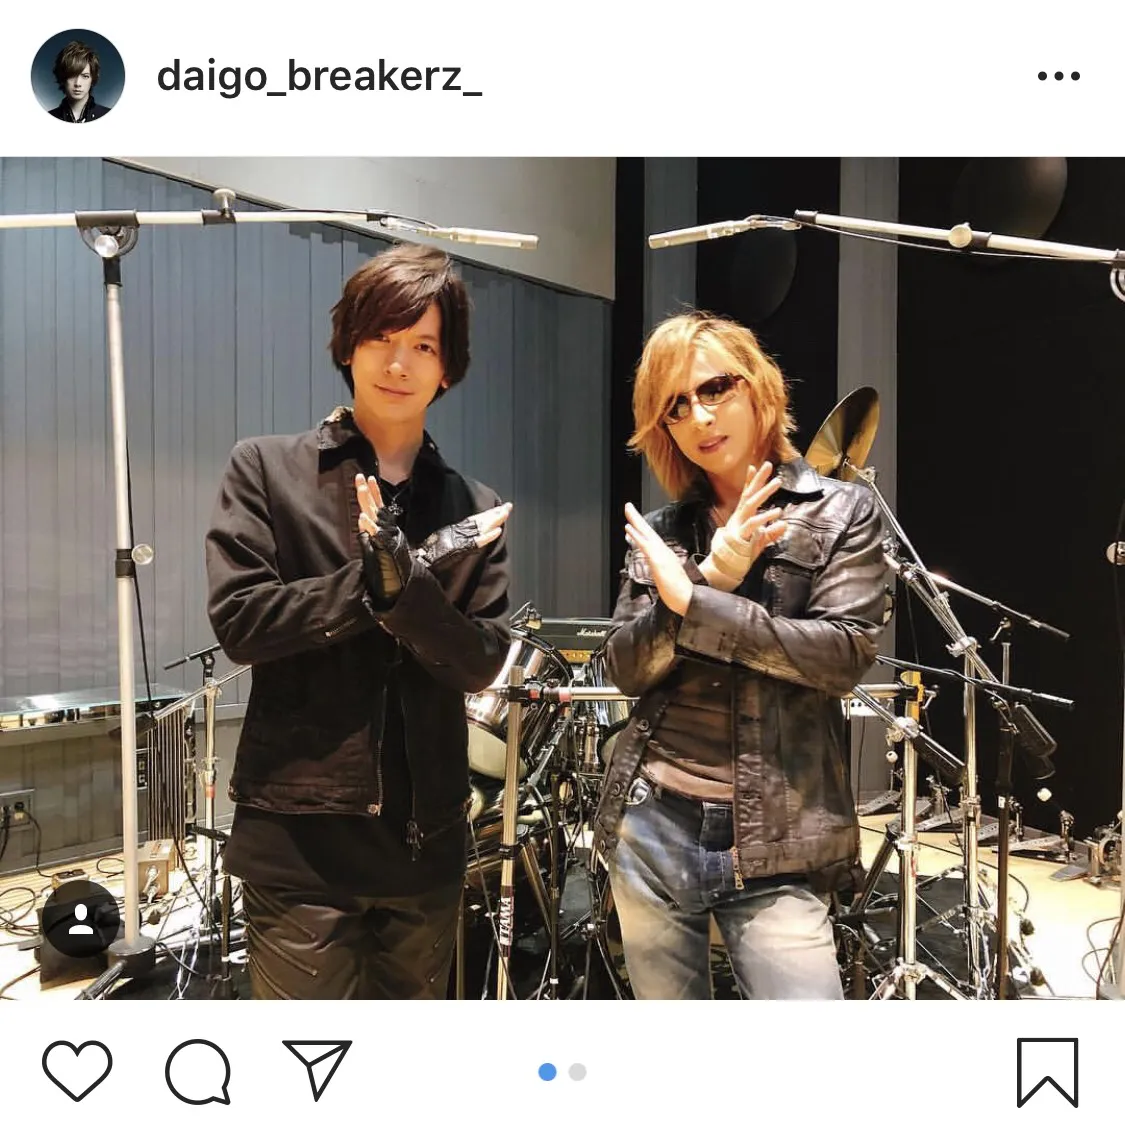 「火曜サプライズ」でYOSHIKIとDAIGOが共演